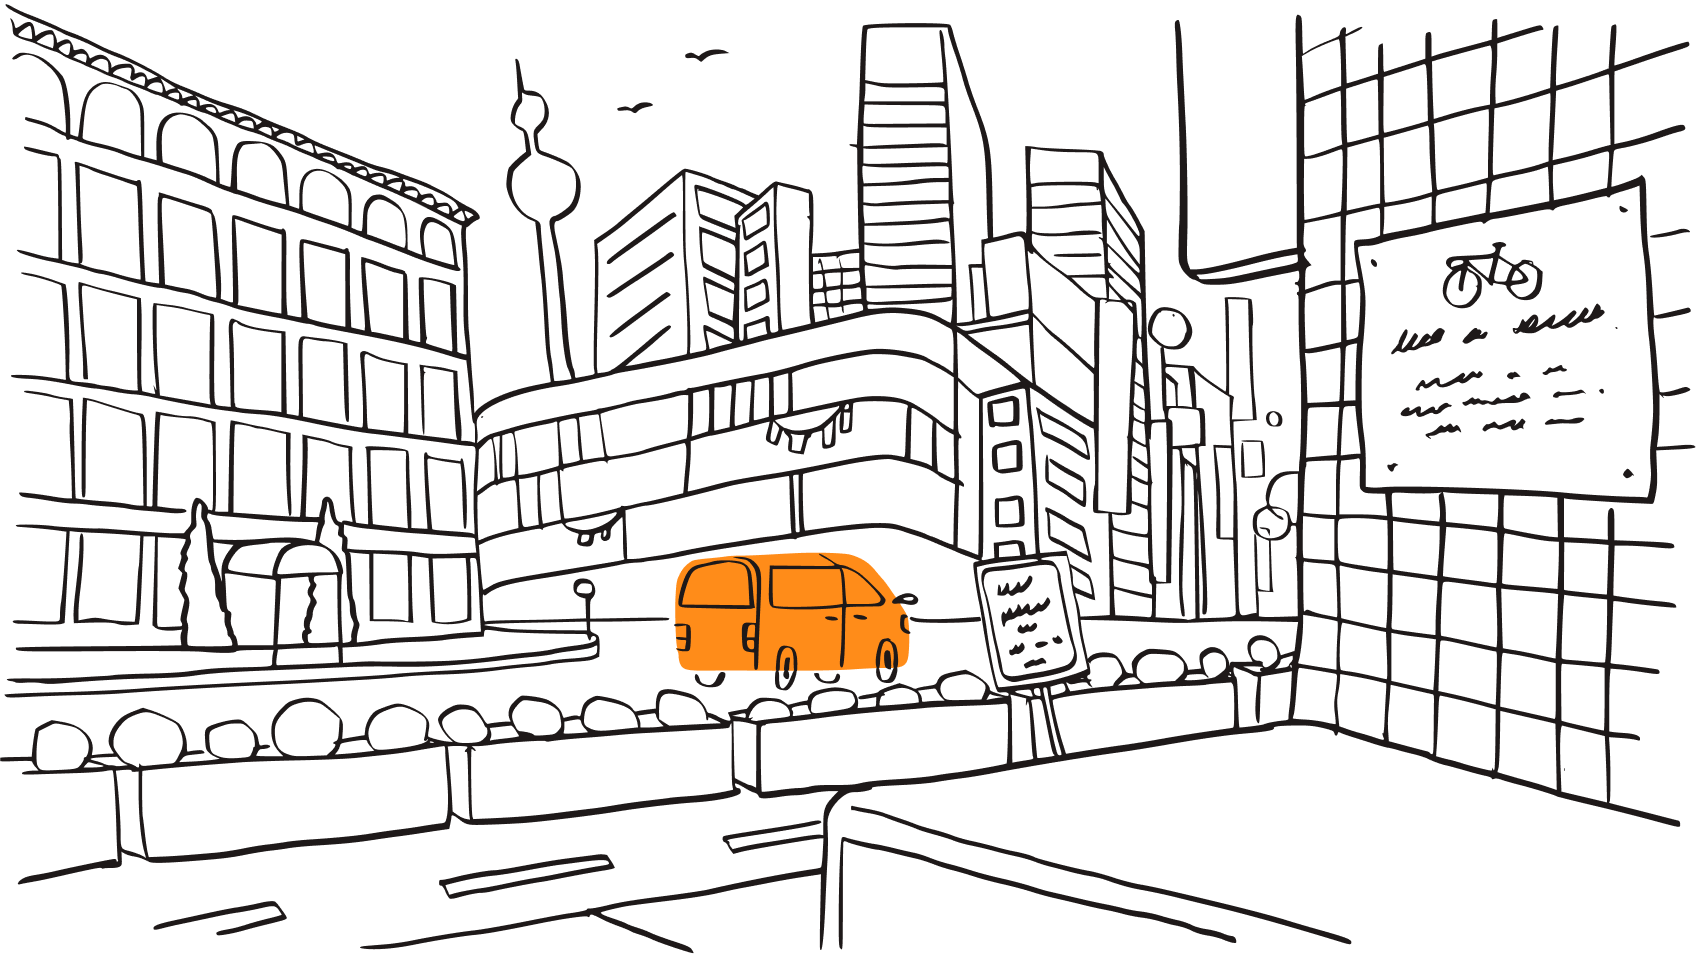 Una ilustración de una ciudad, que representa la amenaza que suponen los ciberataques y la realidad de que pueden provenir de cualquier lugar.